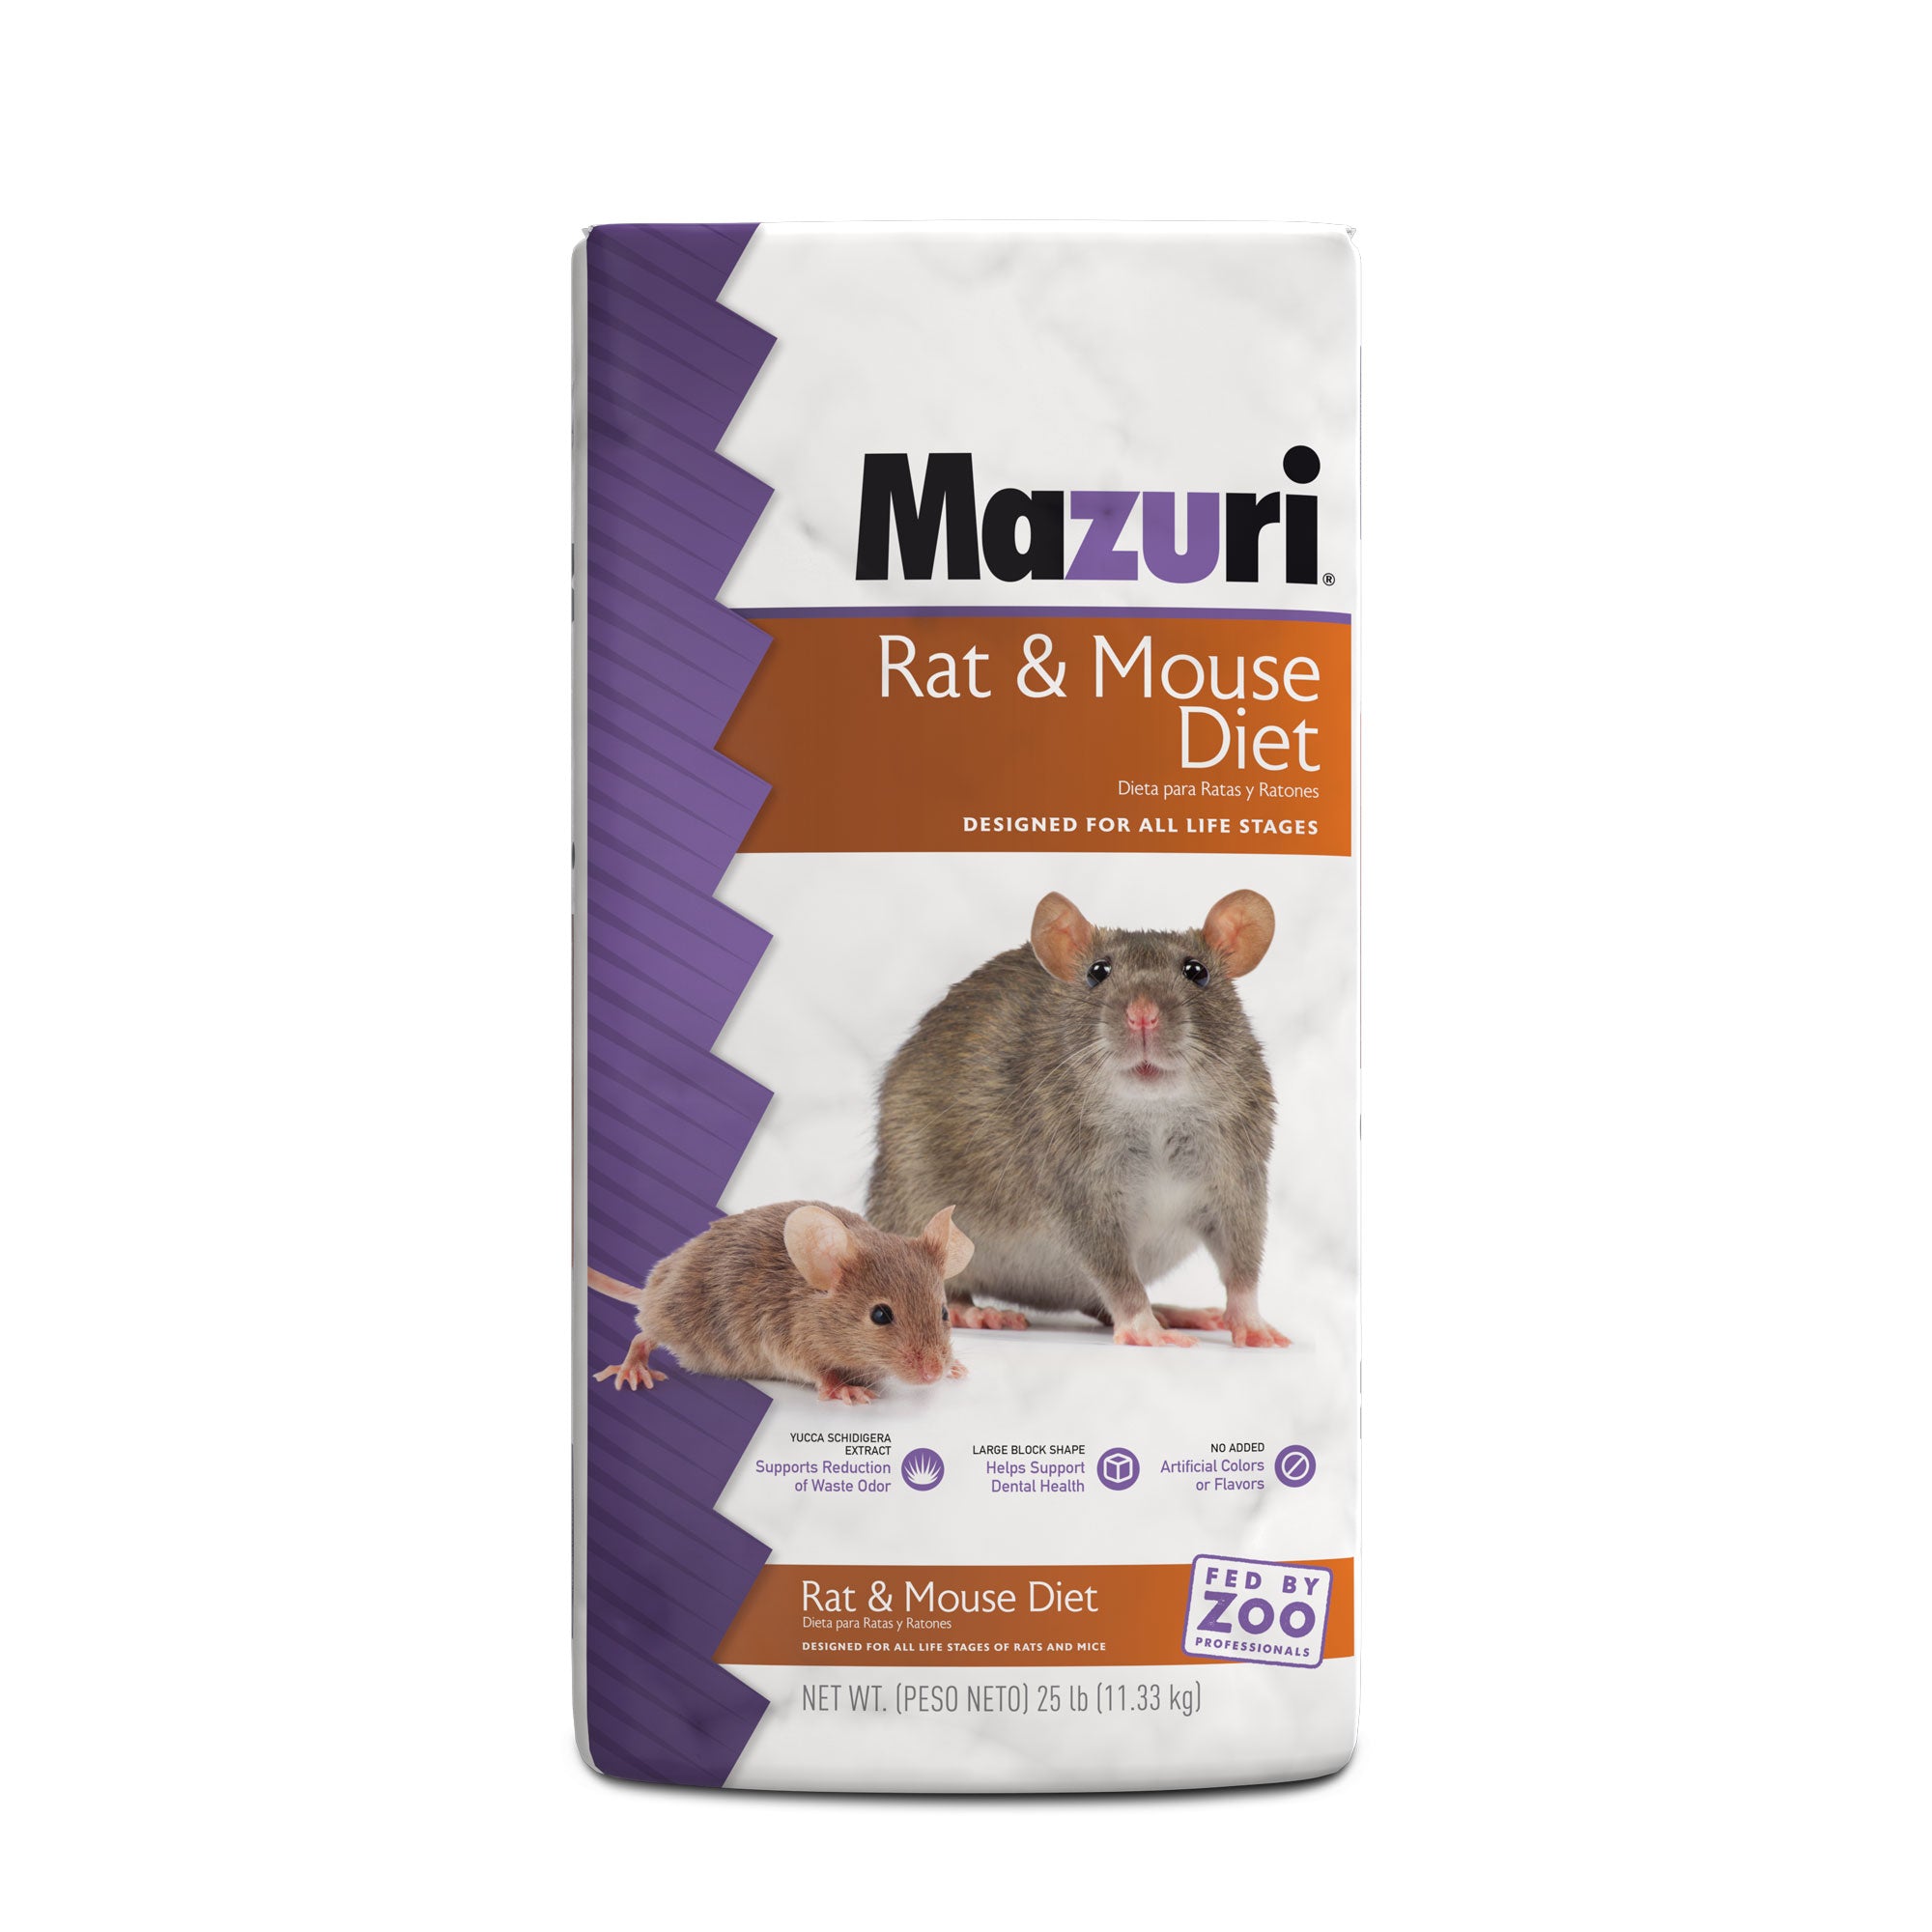 Rat & Mouse Diet 25 pound bag front